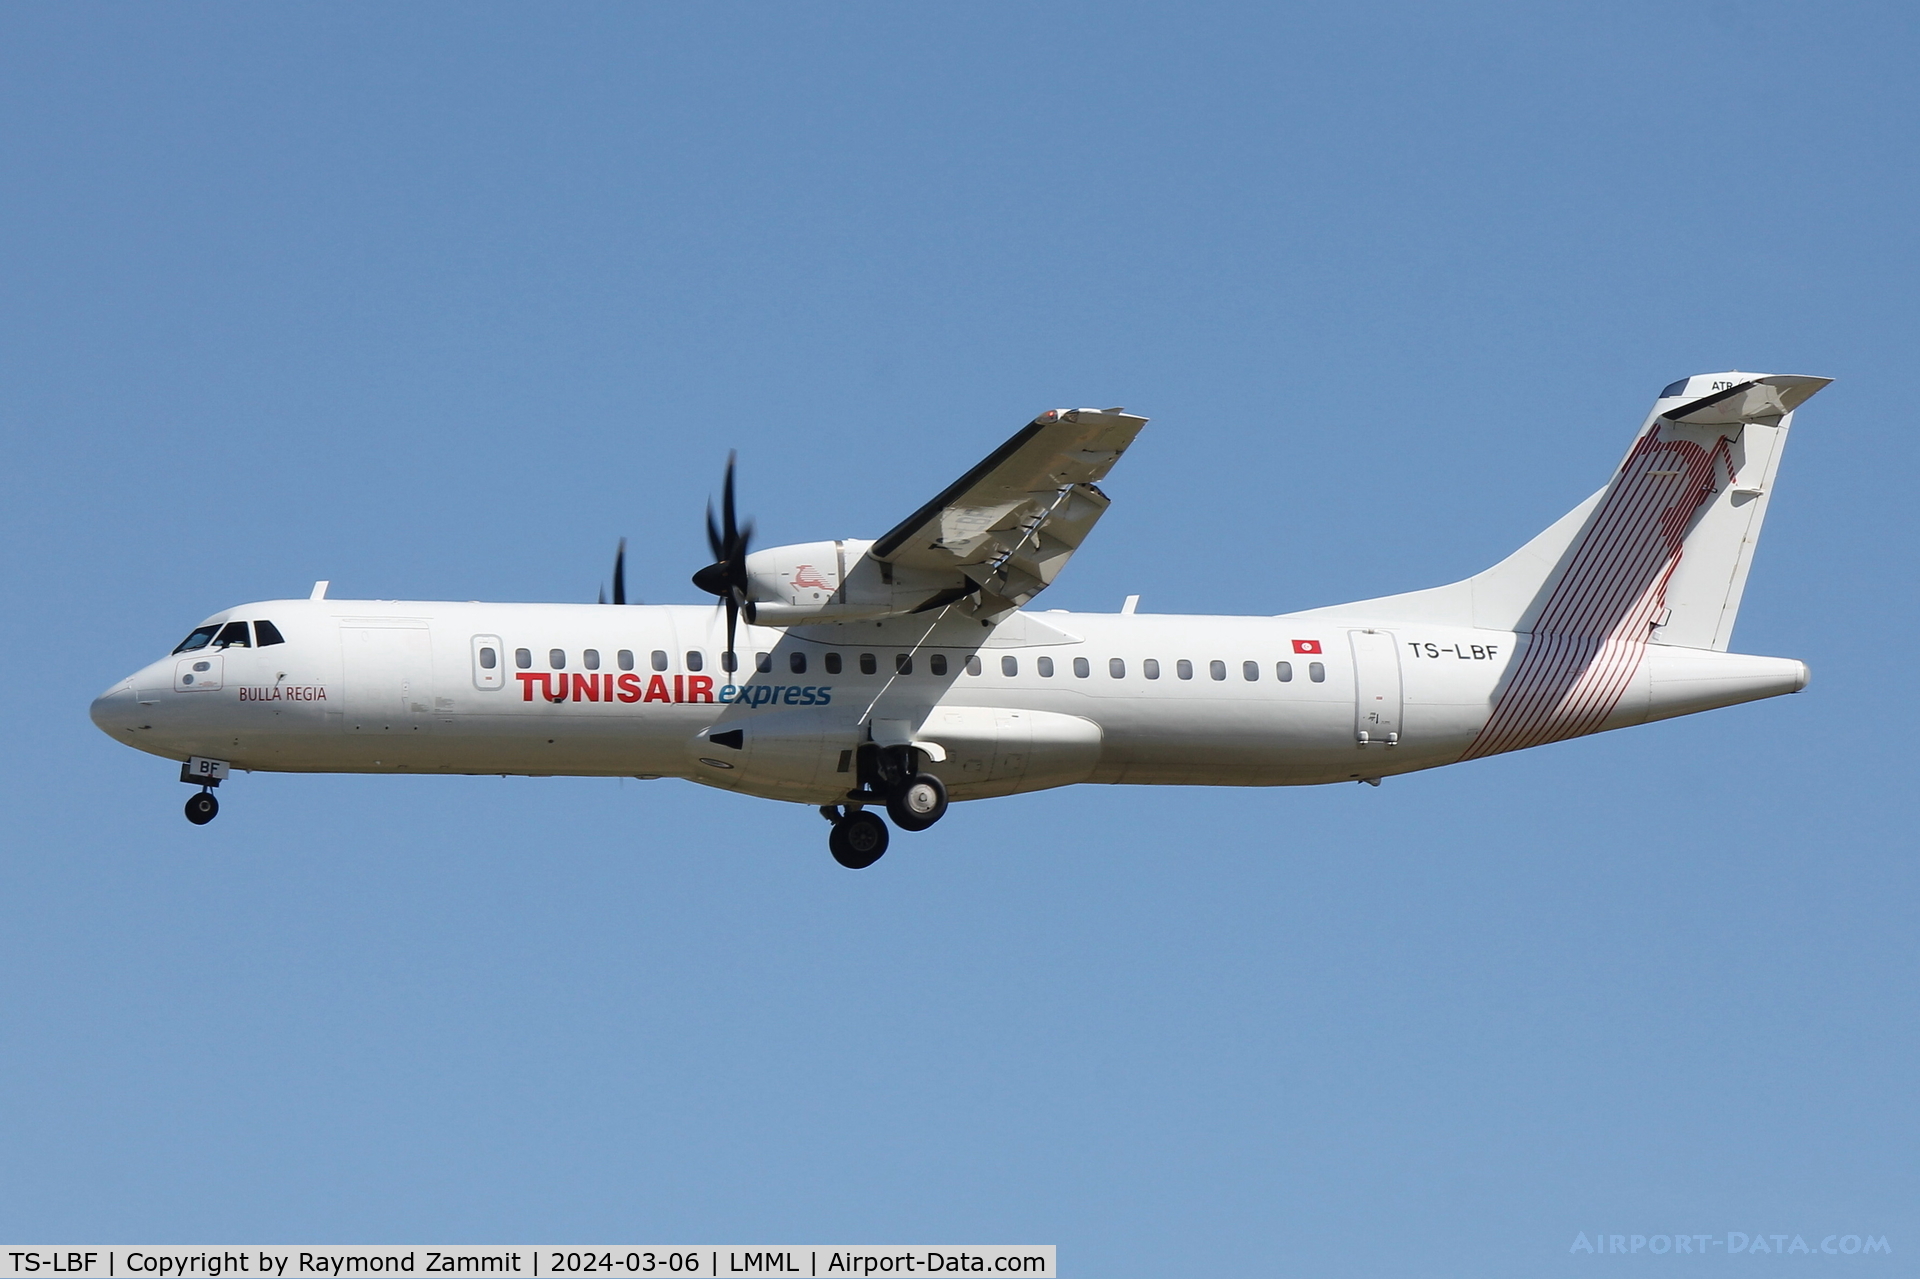 TS-LBF, 2019 ATR 72-600 (72-212A) C/N 1582, ATR-72 TS-LBF Tunisair Express